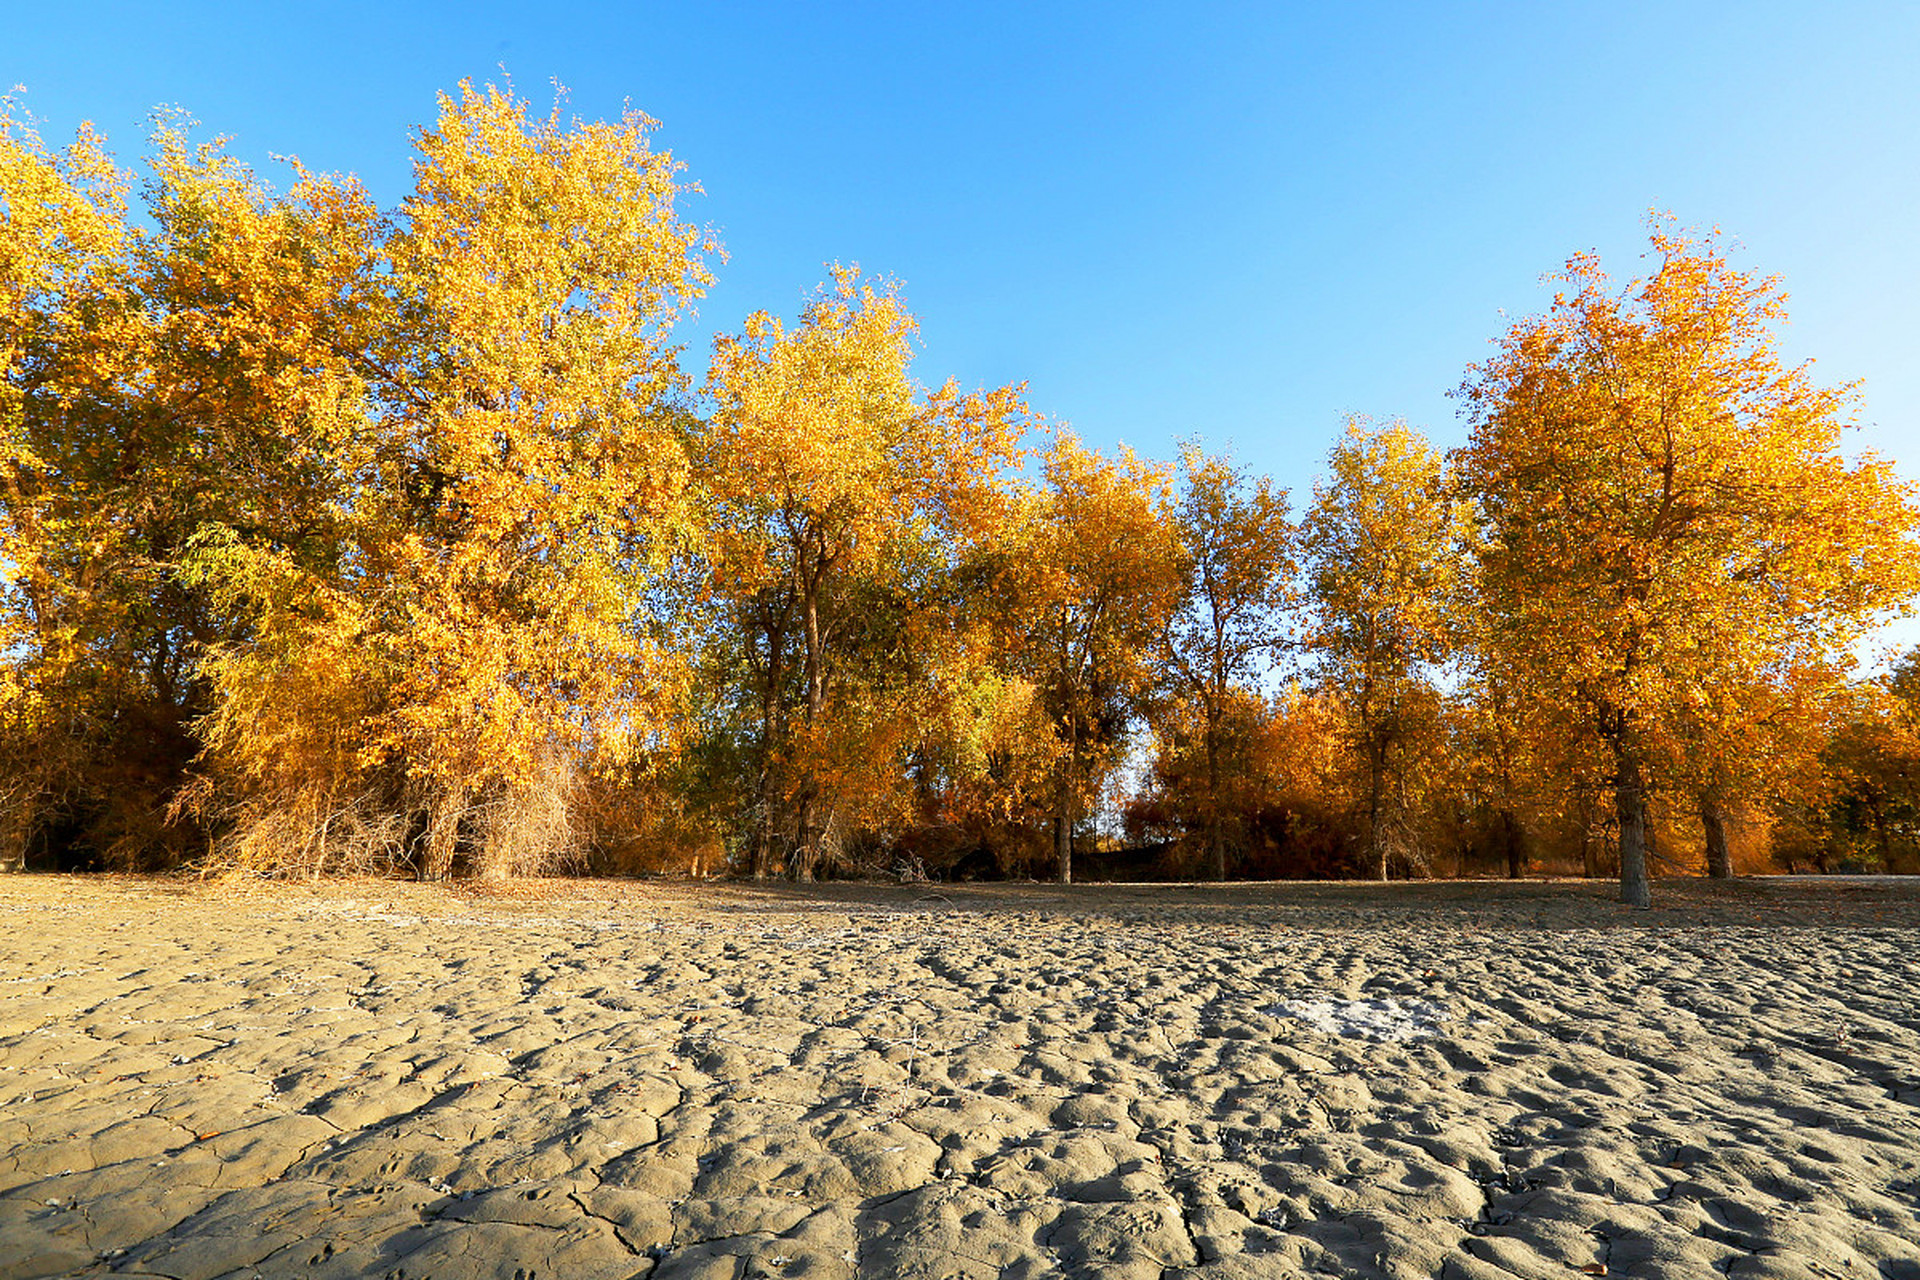 新疆轮台塔里木胡杨林公园是世界上唯一的沙漠胡杨林公园,位于新疆